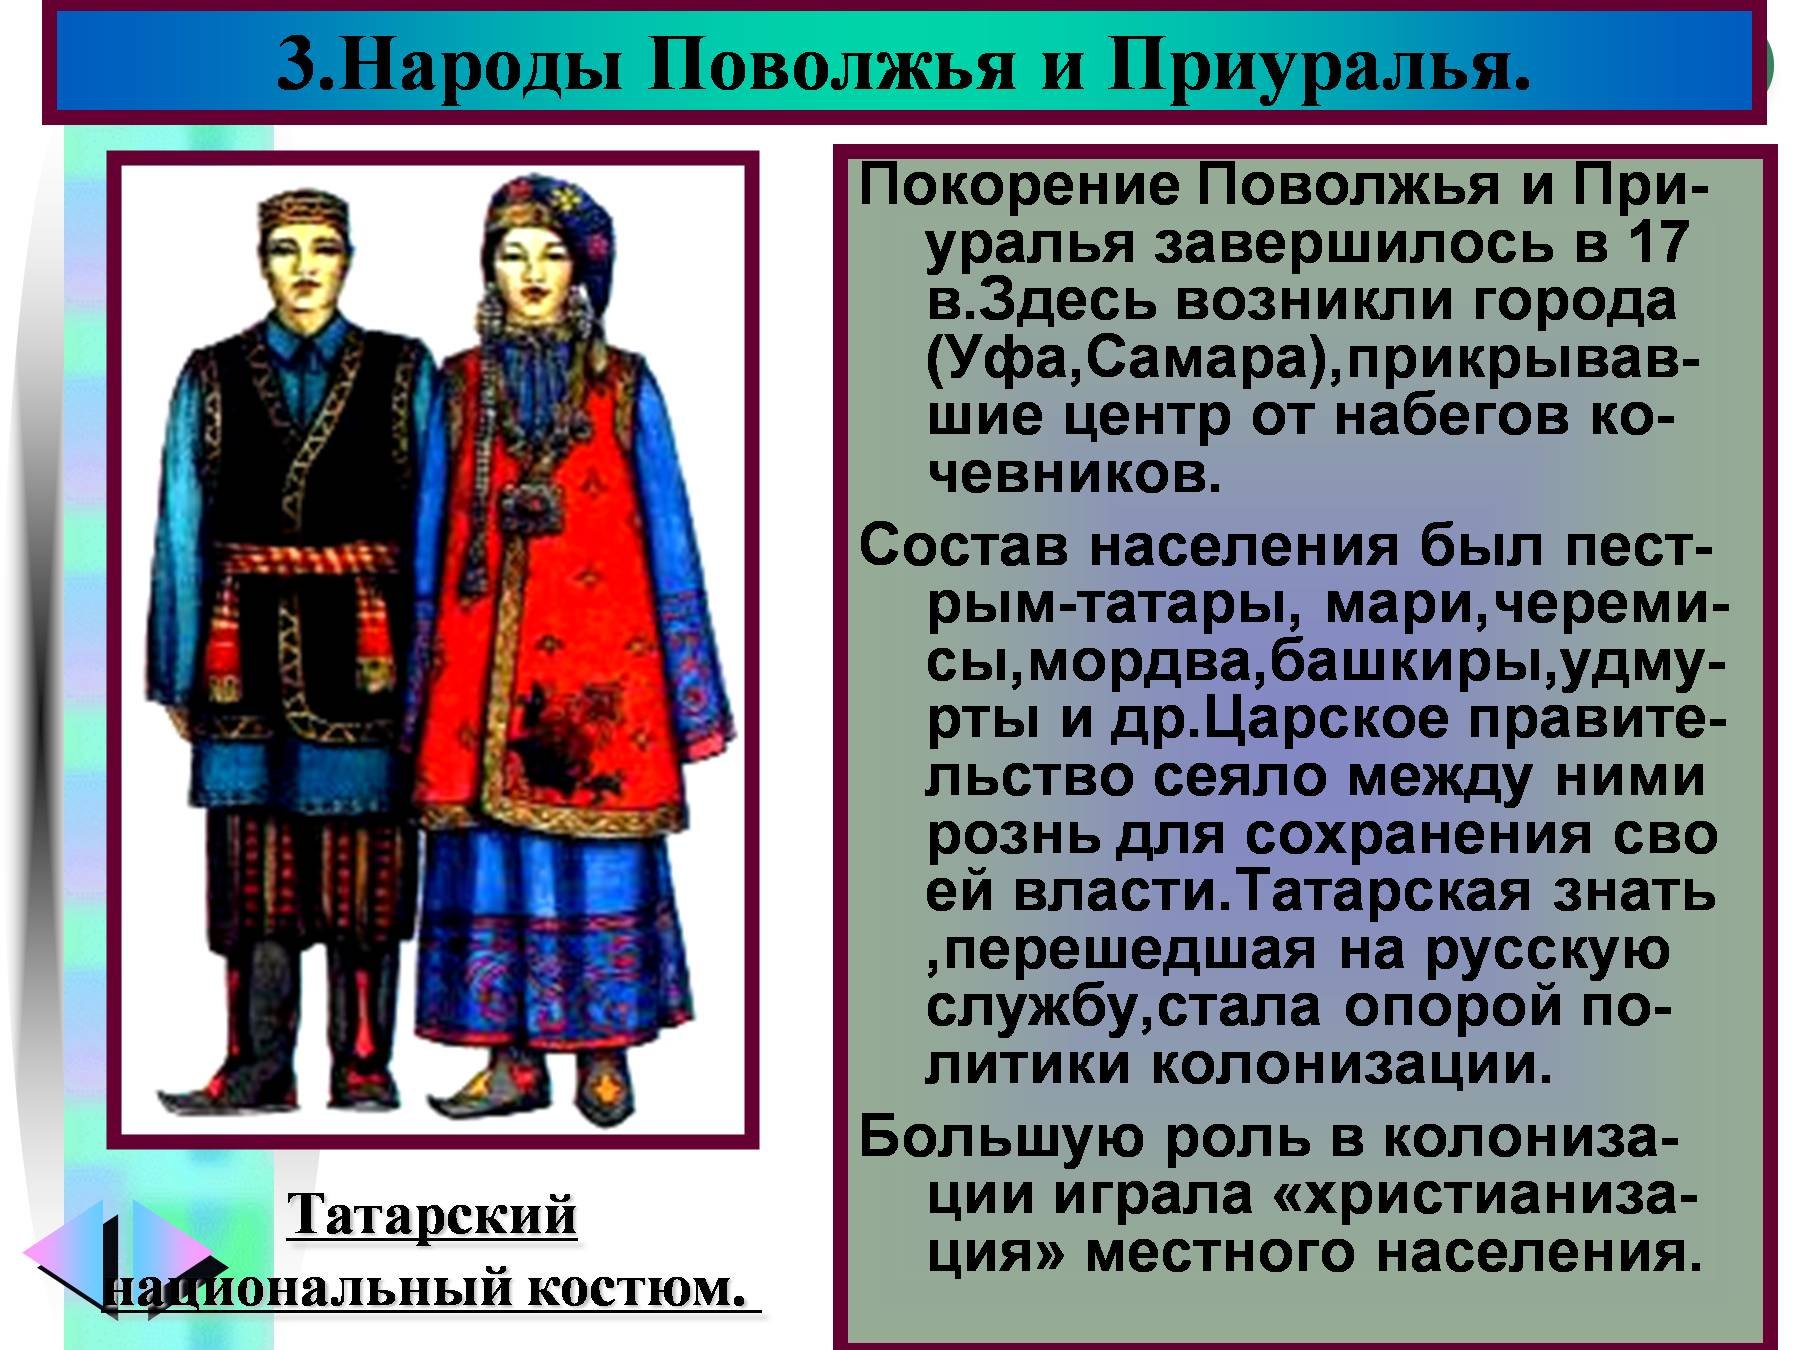 Одежда народов Поволжья и Приуралья в 17 веке